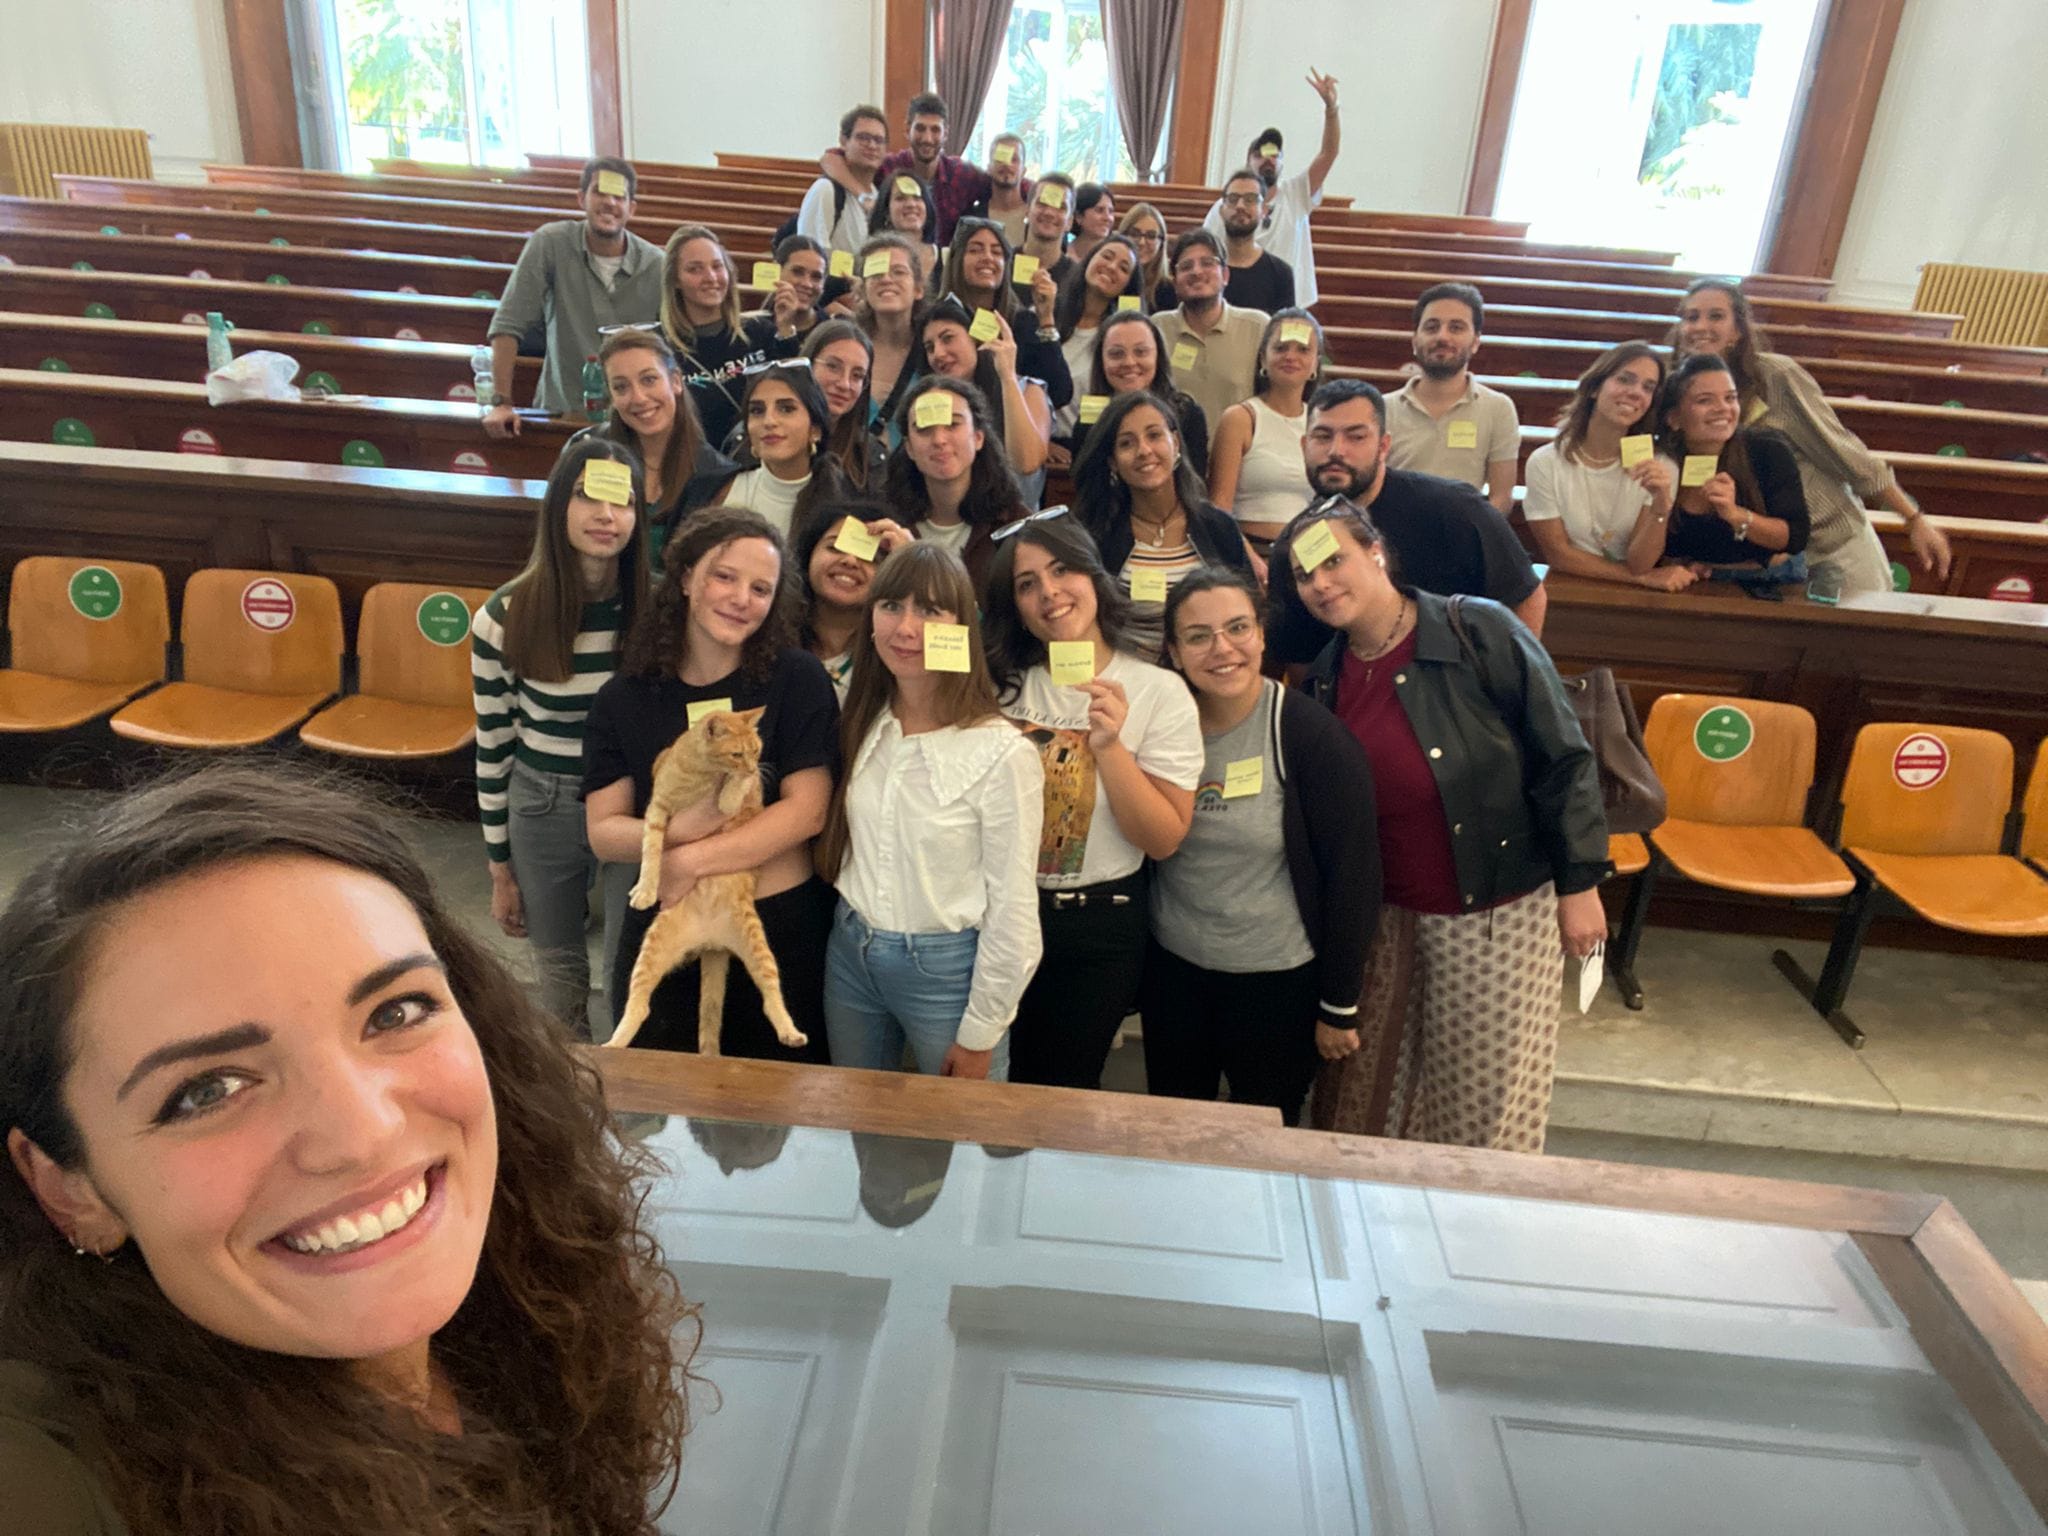 Napoli: Amesci, Servizio Civile all’Università Federico II, opportunità per 50 giovani